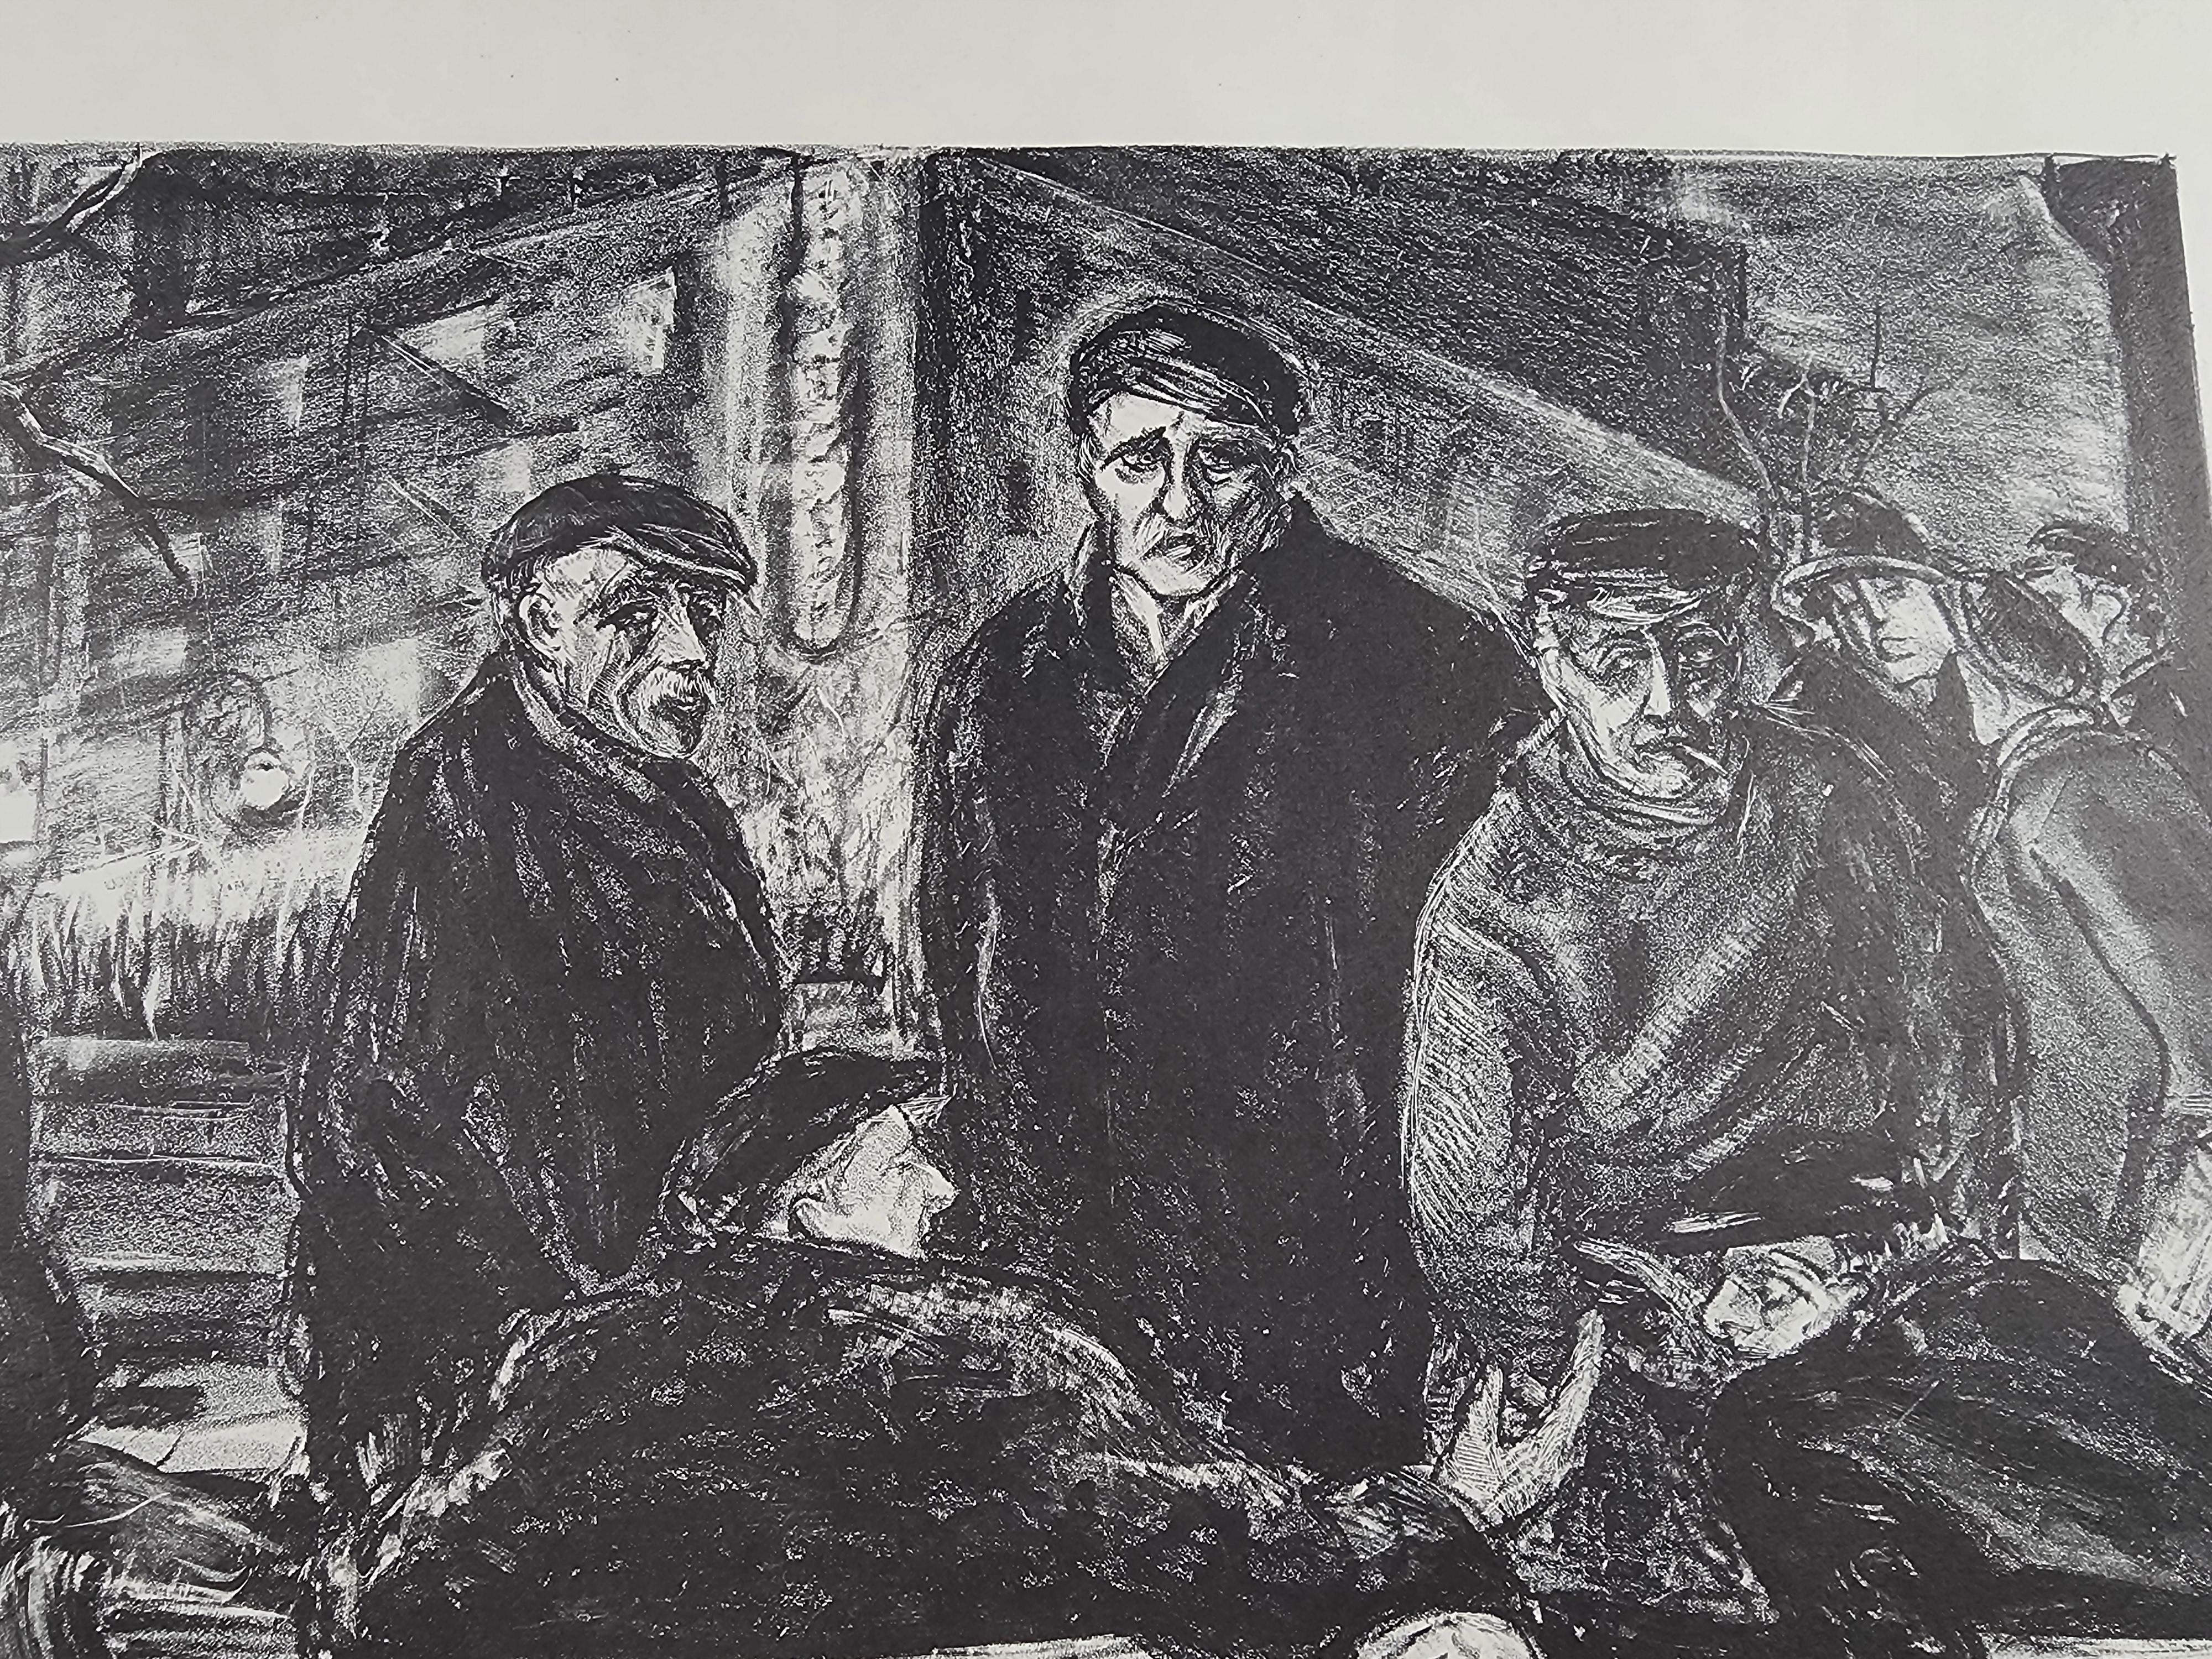 Eine Lithographie der WPA-Ära von Eugene Fitsch, herausgegeben von der American Artist School in New York, mit einer Faksimile-Signatur unten rechts unter dem Bild.
Abgebildet sind wahrscheinlich arbeitslose Männer im Park.